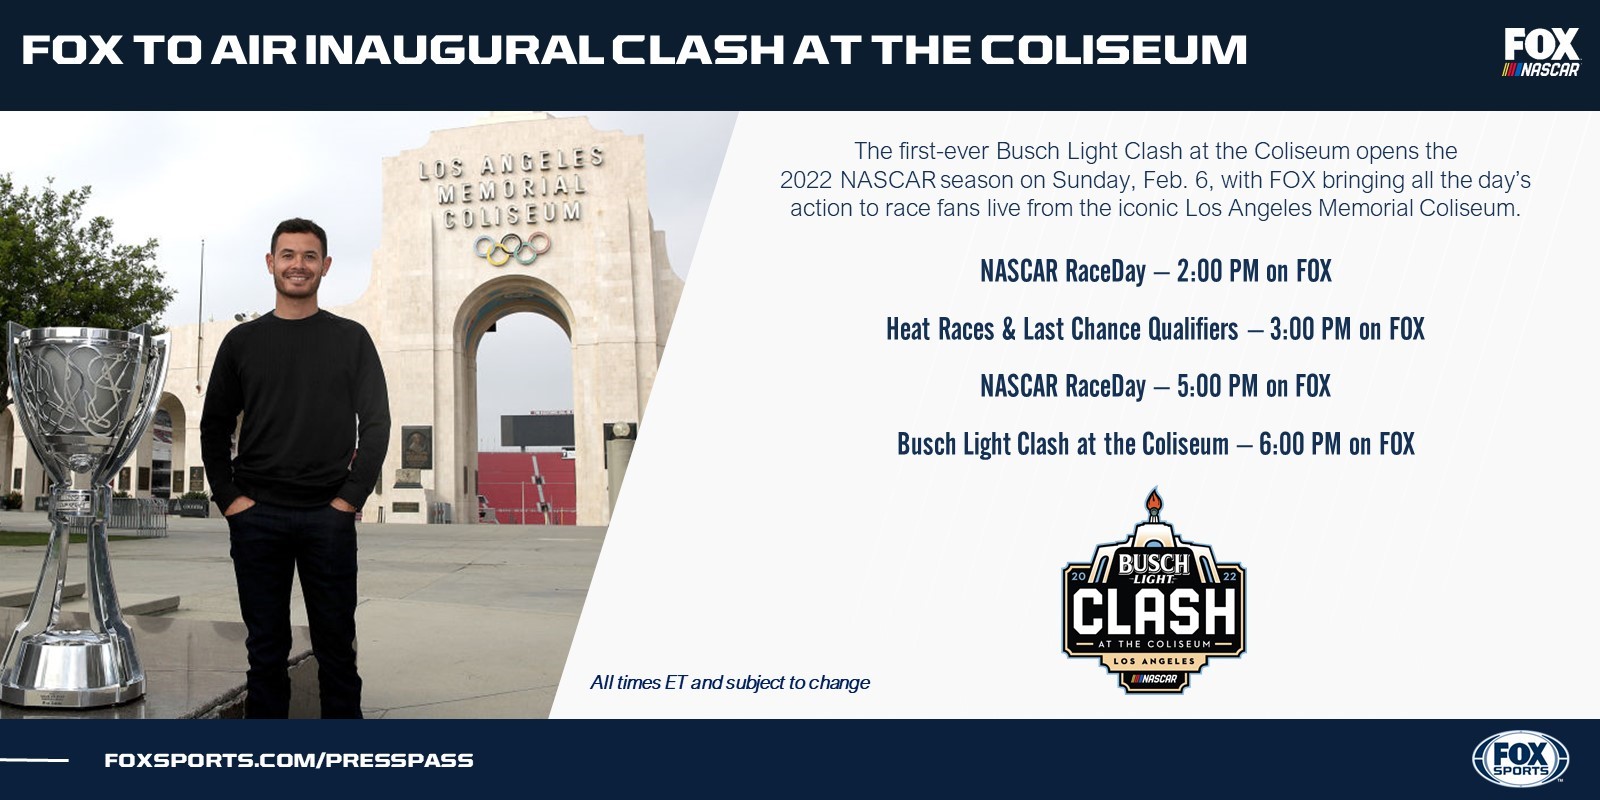 Fox to Air inaugural Clash at the Coliseum